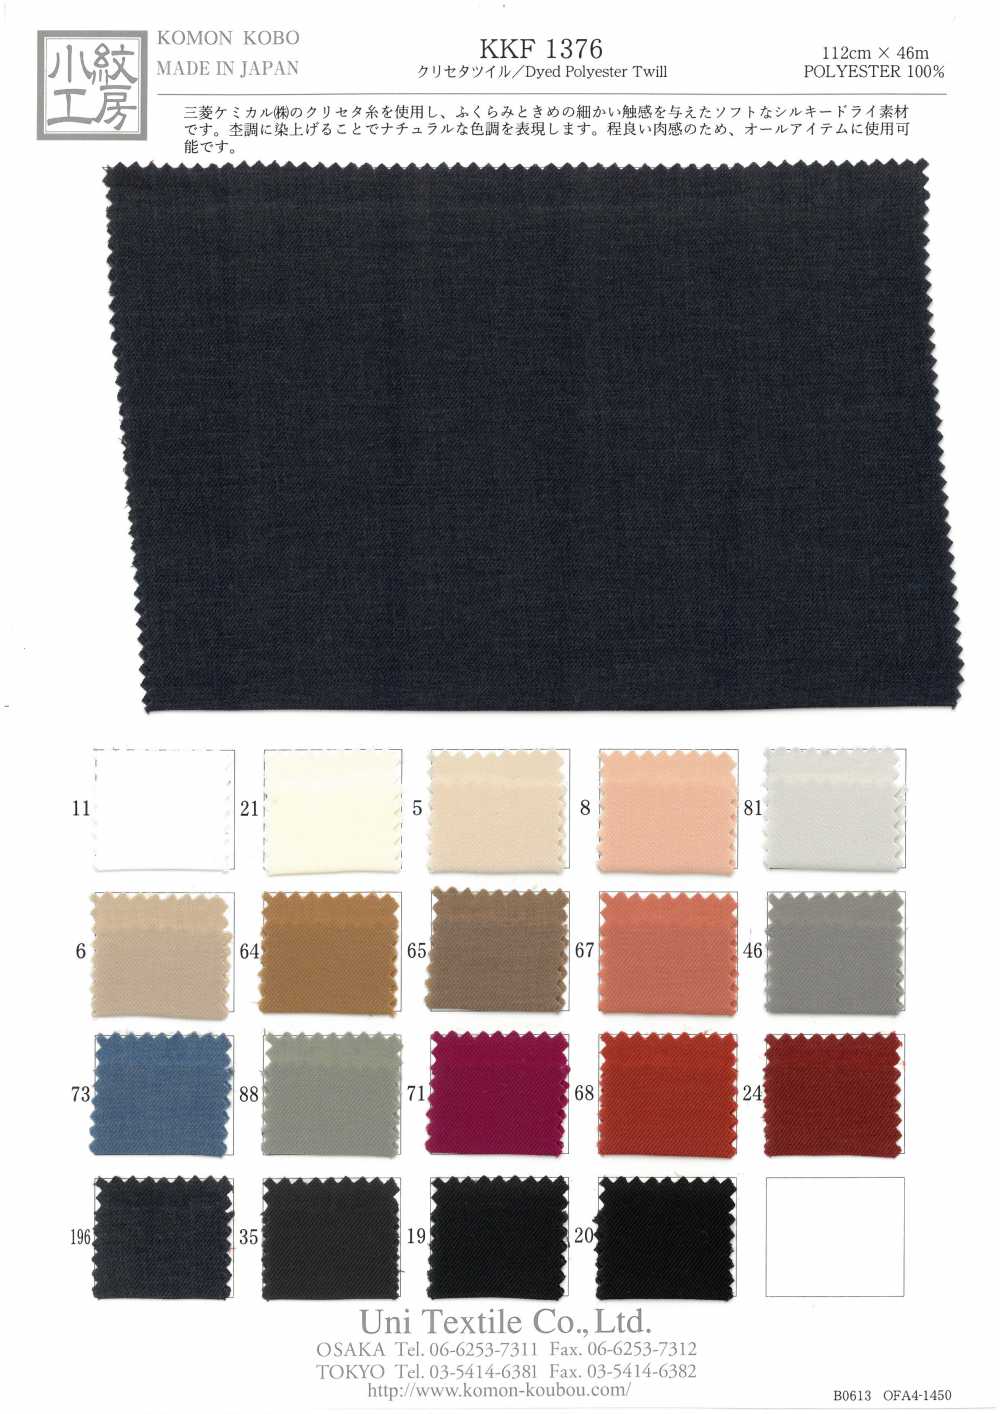 KKF1376 Chryseta-Köper[Textilgewebe] Uni Textile